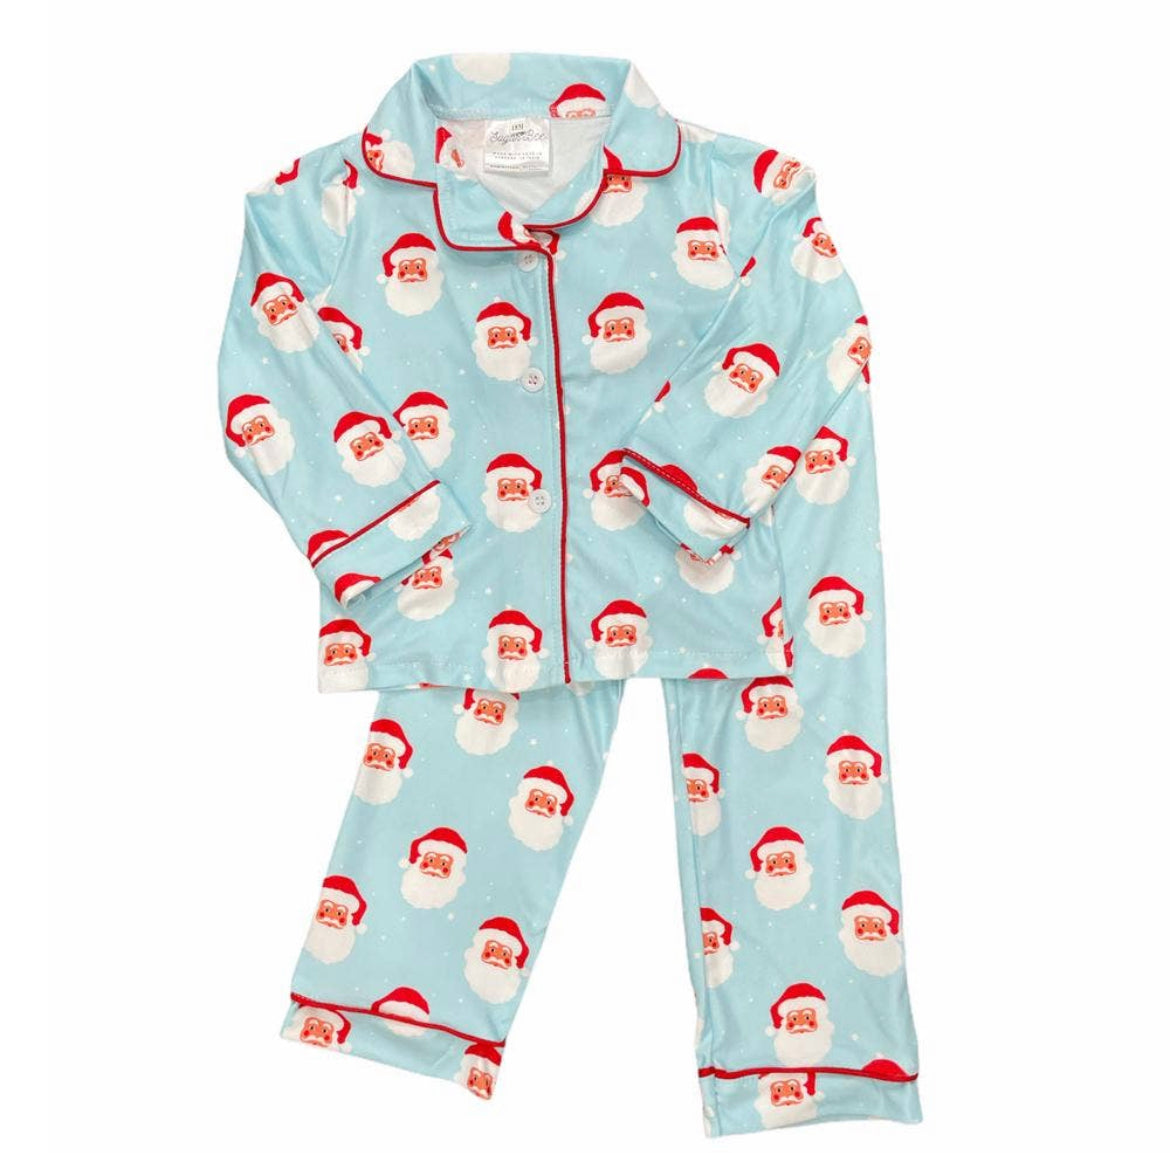 HO! HO! HO! Santa Button Up Pajamas